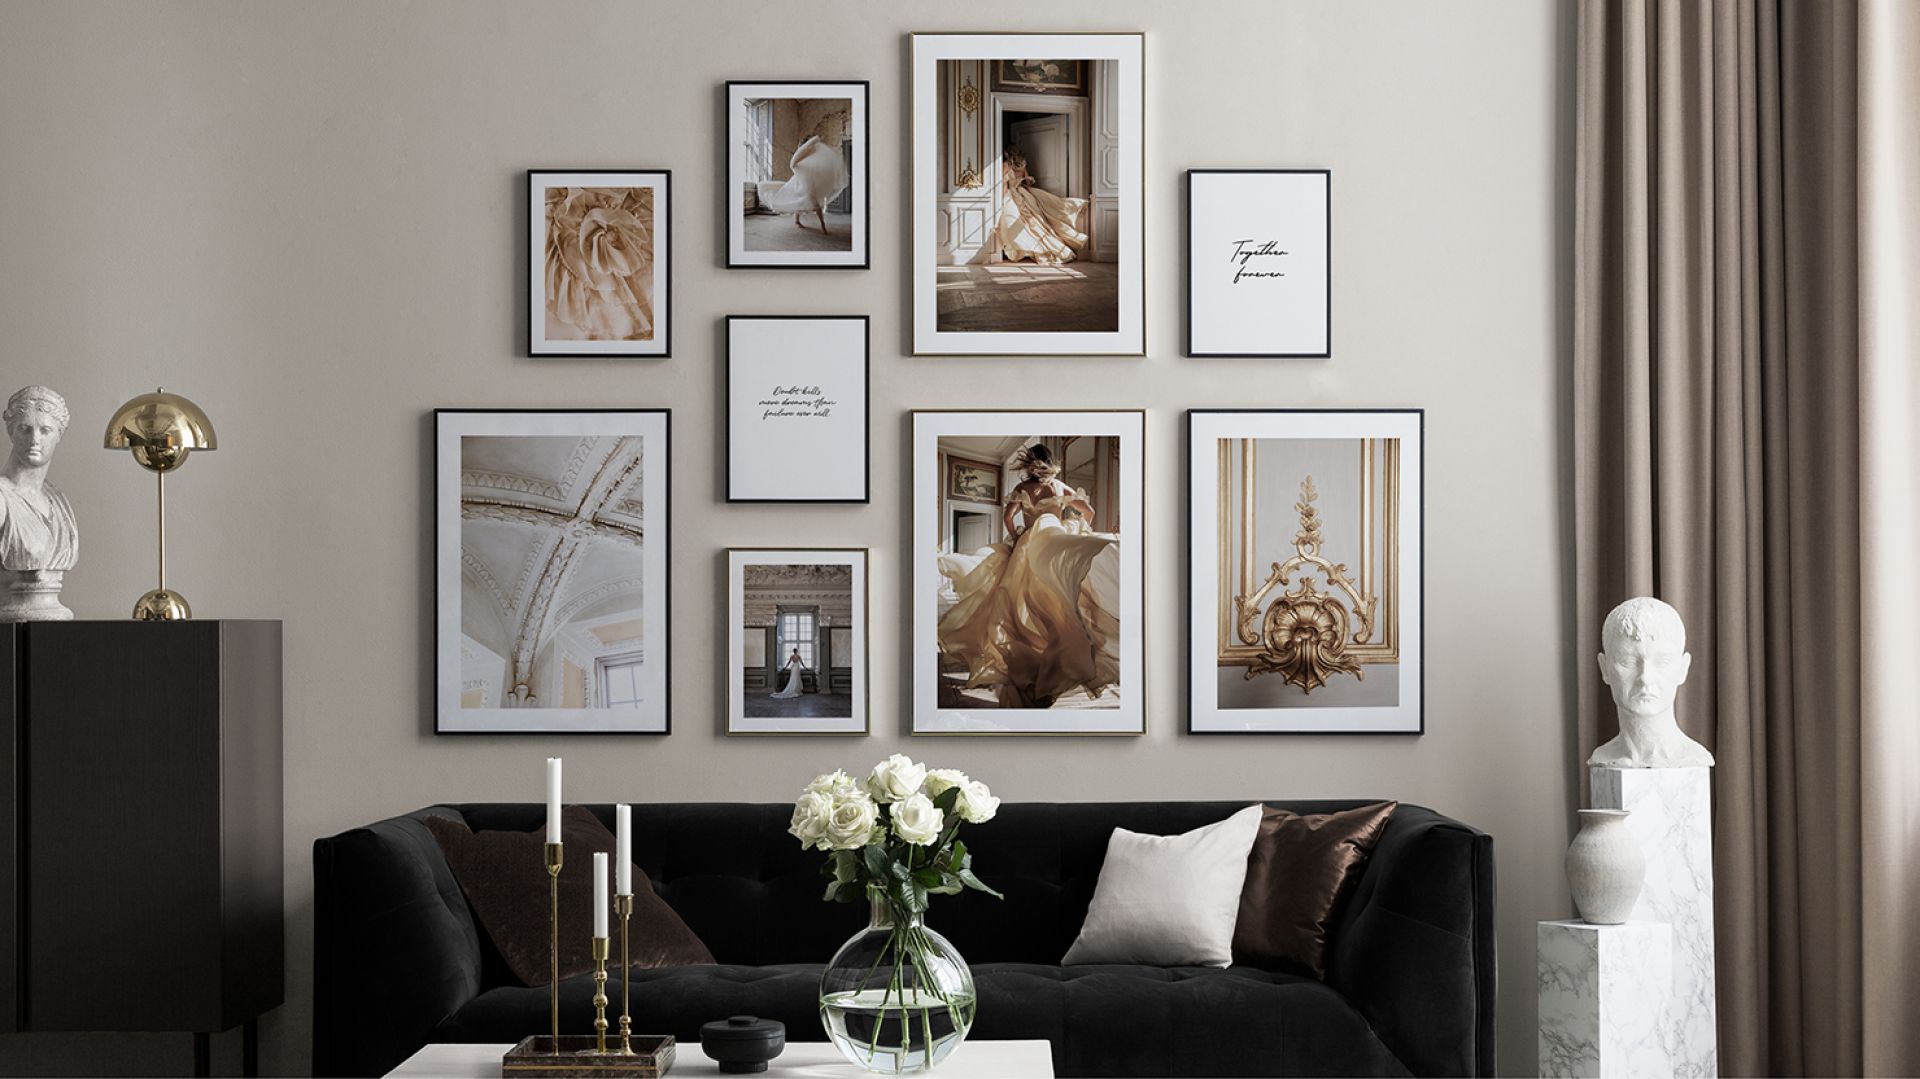 Pomysł na ściany w salonie: kolekcja fotografii artystycznych. Zobacz jaka piękna!